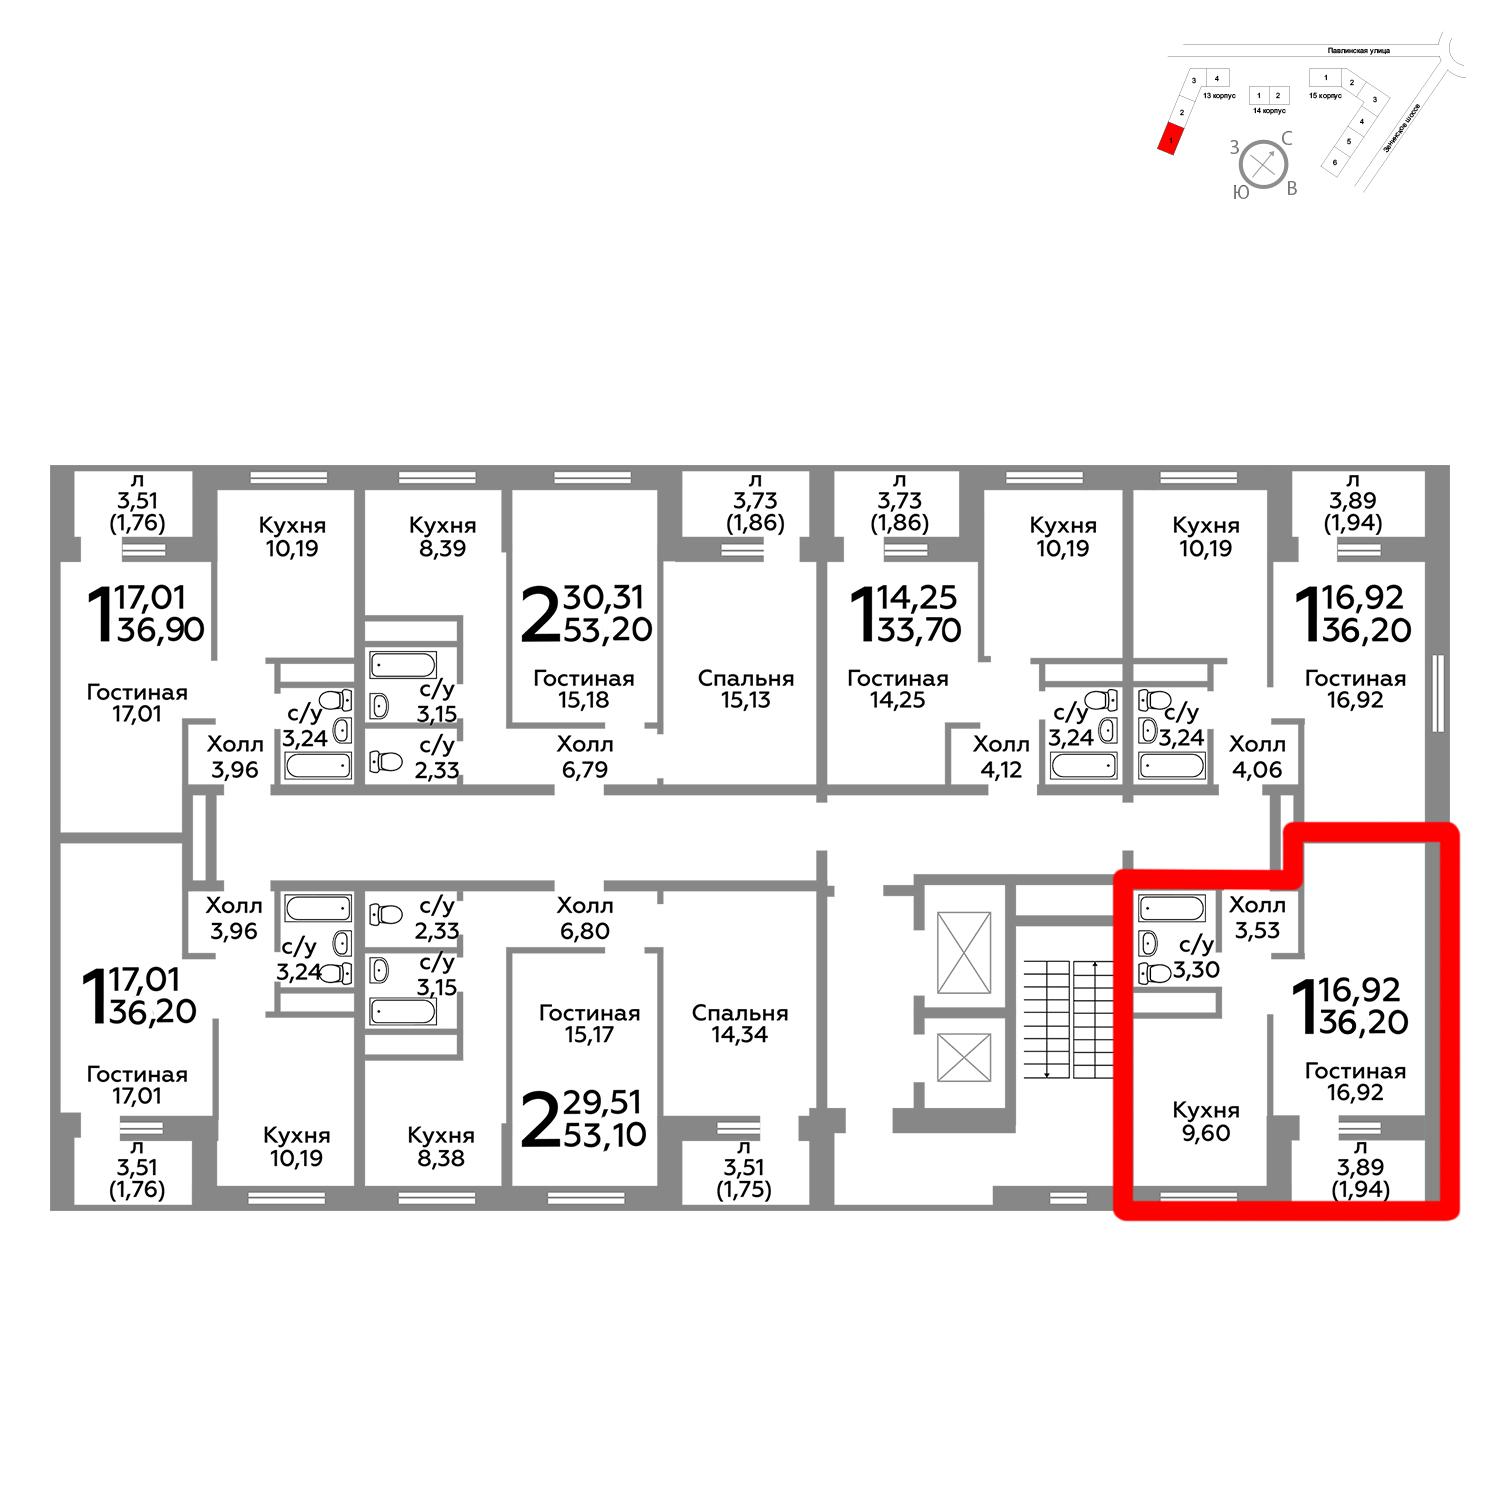 Продаётся 1-комнатная квартира в новостройке 36.2 кв.м. этаж 7/22 за 3 828 150 руб 